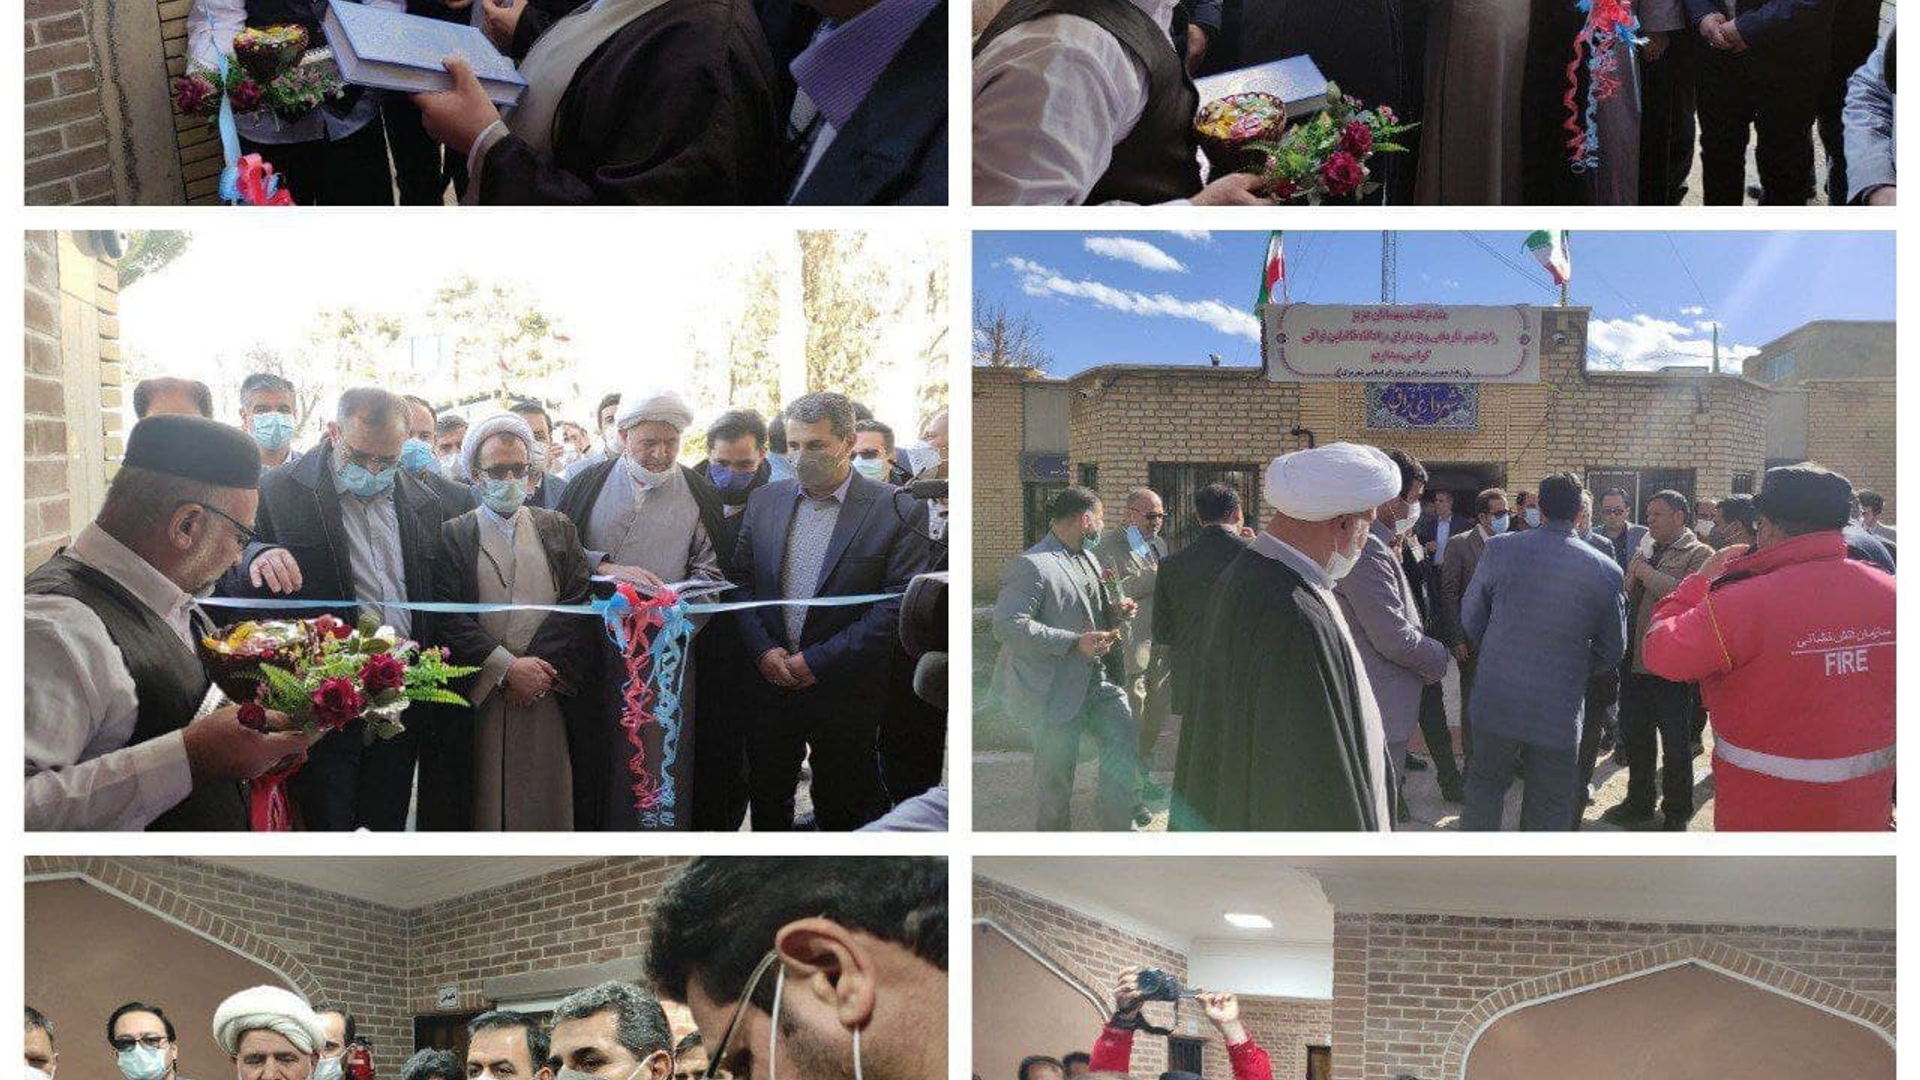 افتتاح ساختمان بازسازی شده شهرداری نراق